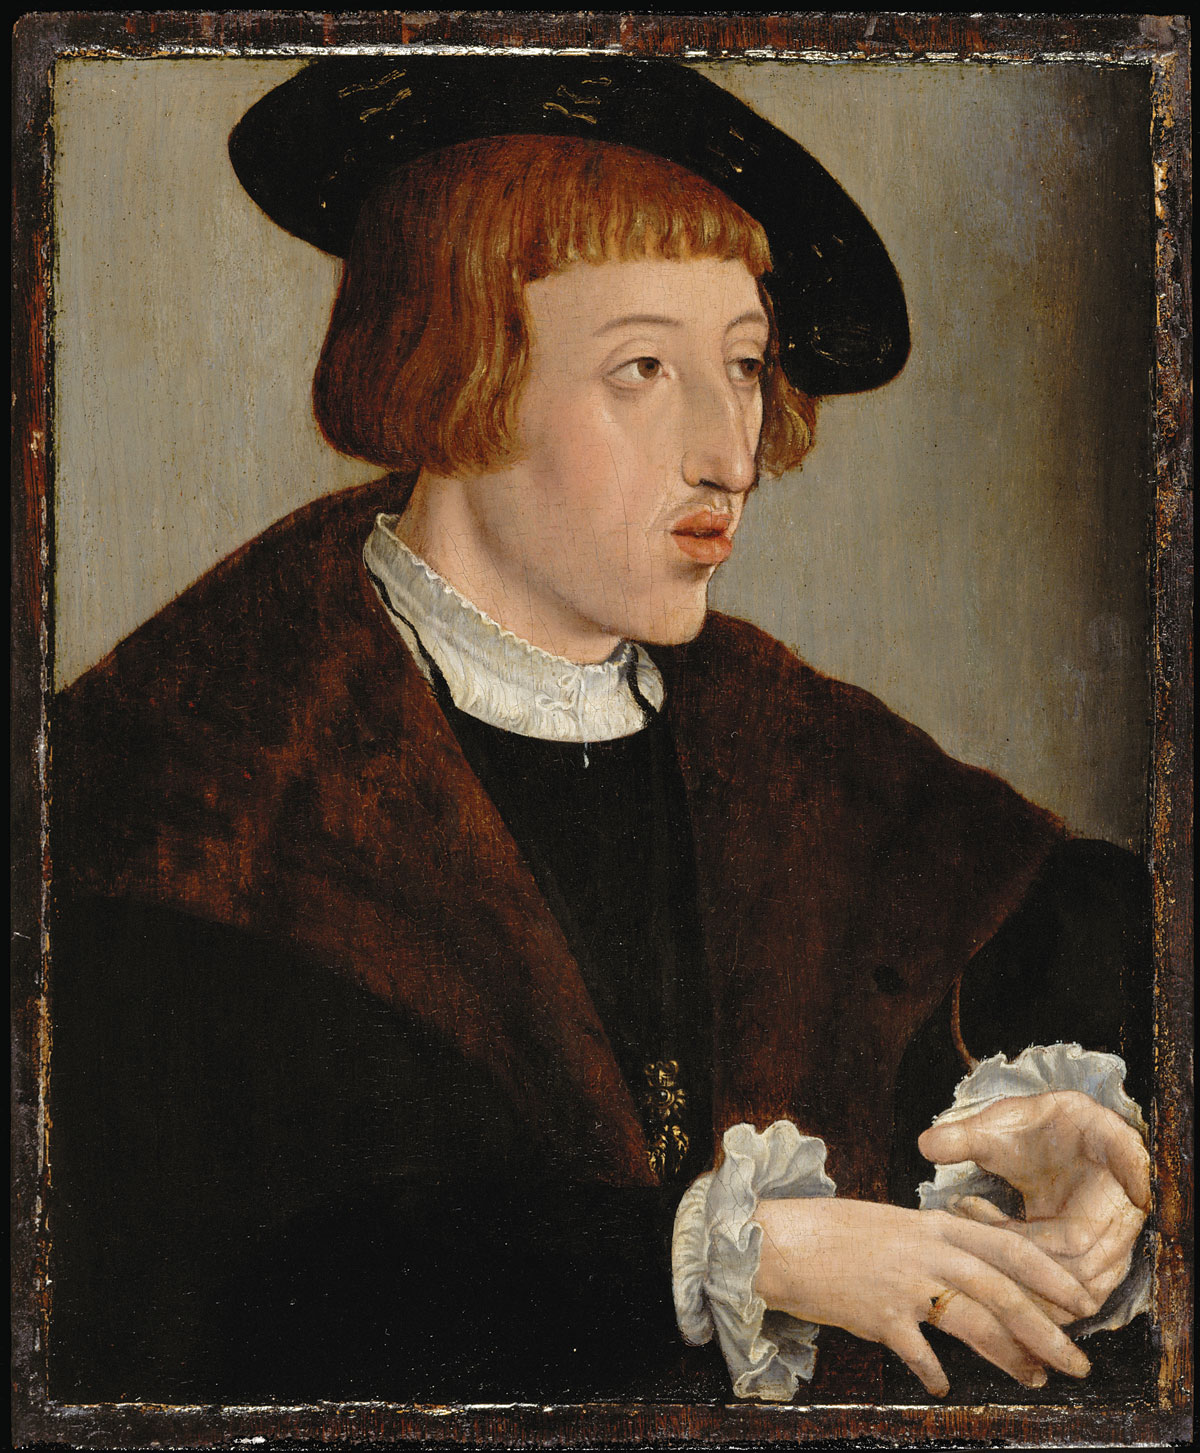 Čekijos ir Vengrijos karalius Ferdinandas I. 1530. Aut. Jan Cornelisz Vermeyen. KHM